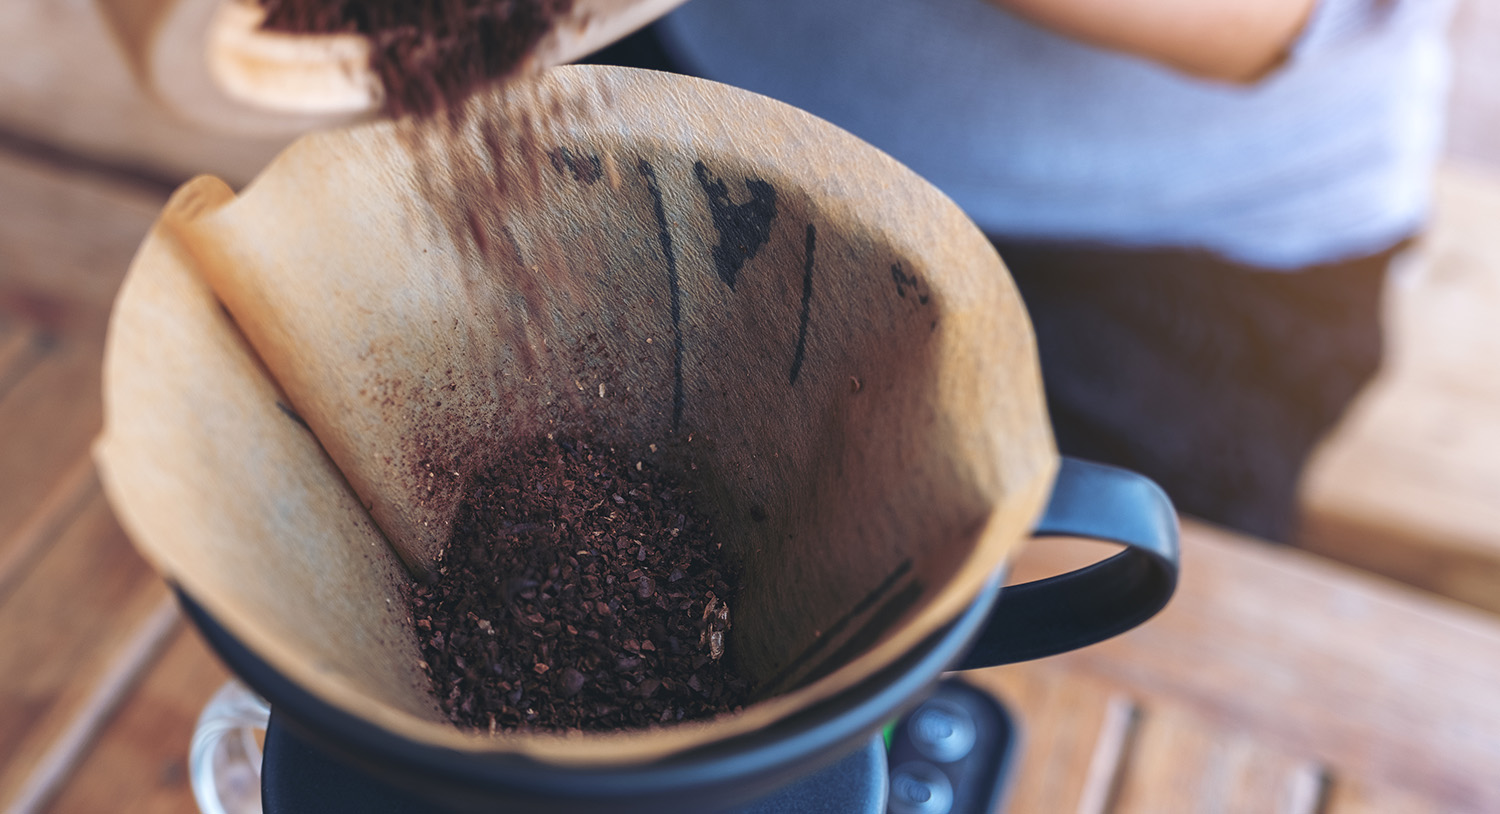 przygotowywanie-kawy-parzenie-kawy-kawa-parzona-wsypywanie-ziaren-kawy-świeżo-zmielona-kawa-metoda-parzenia-kawy